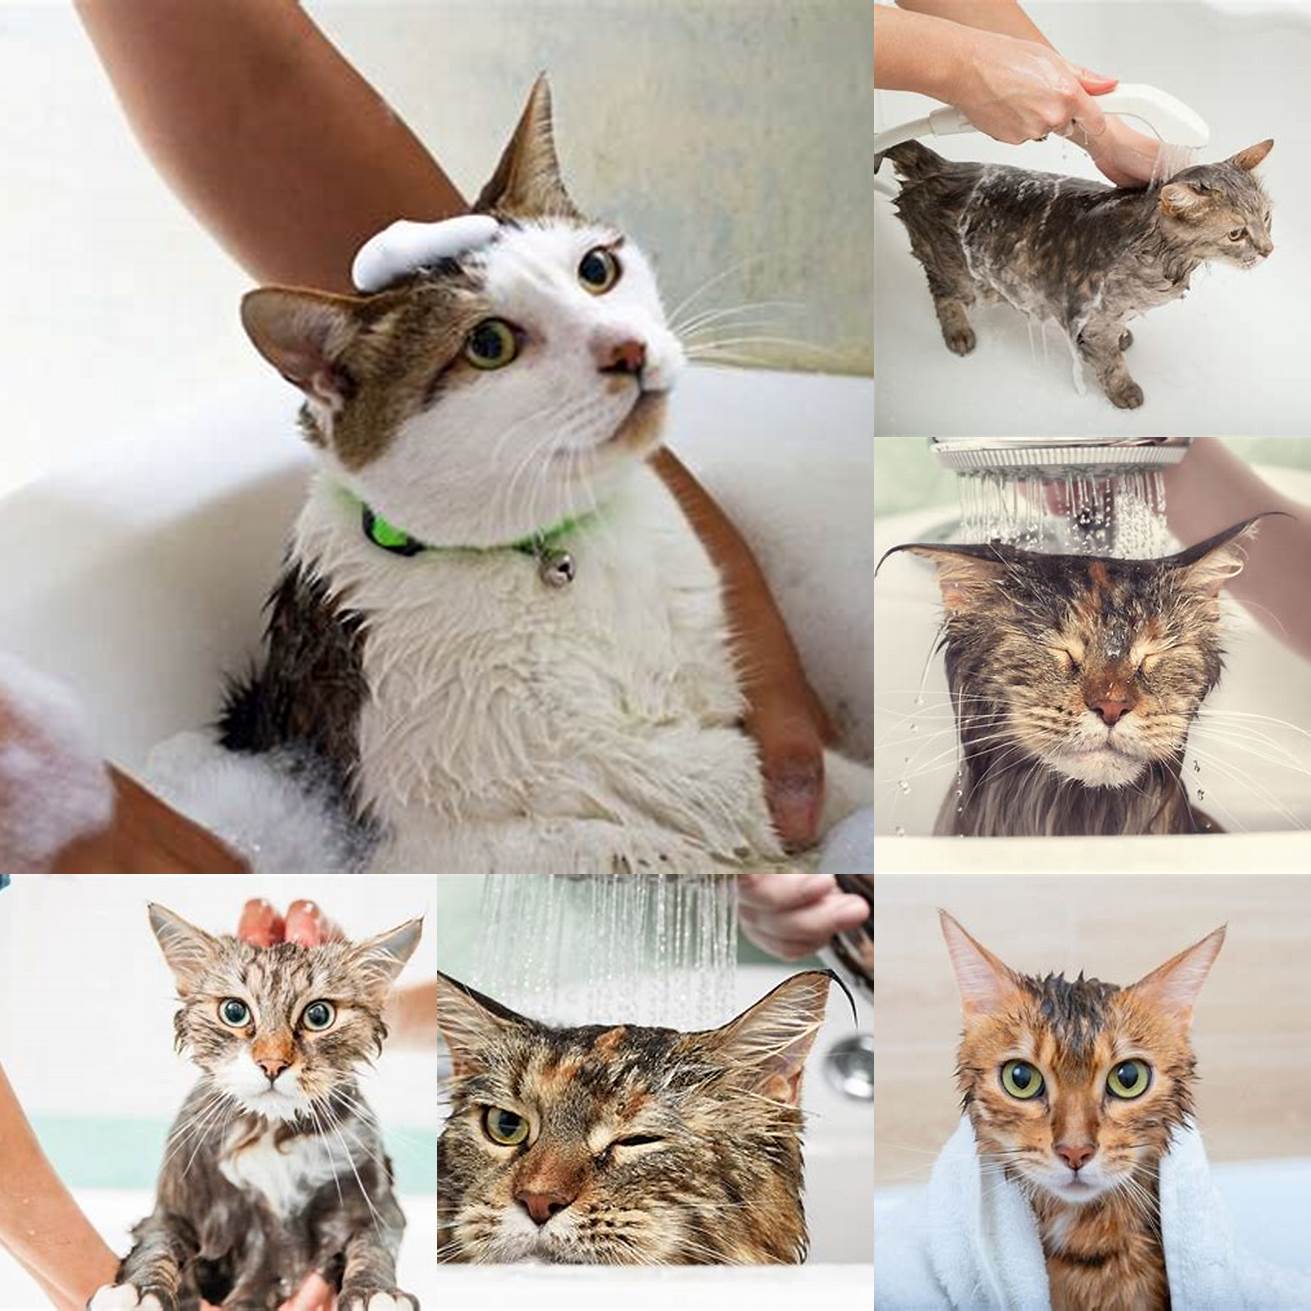 Bathe your cat with a moisturizing shampoo